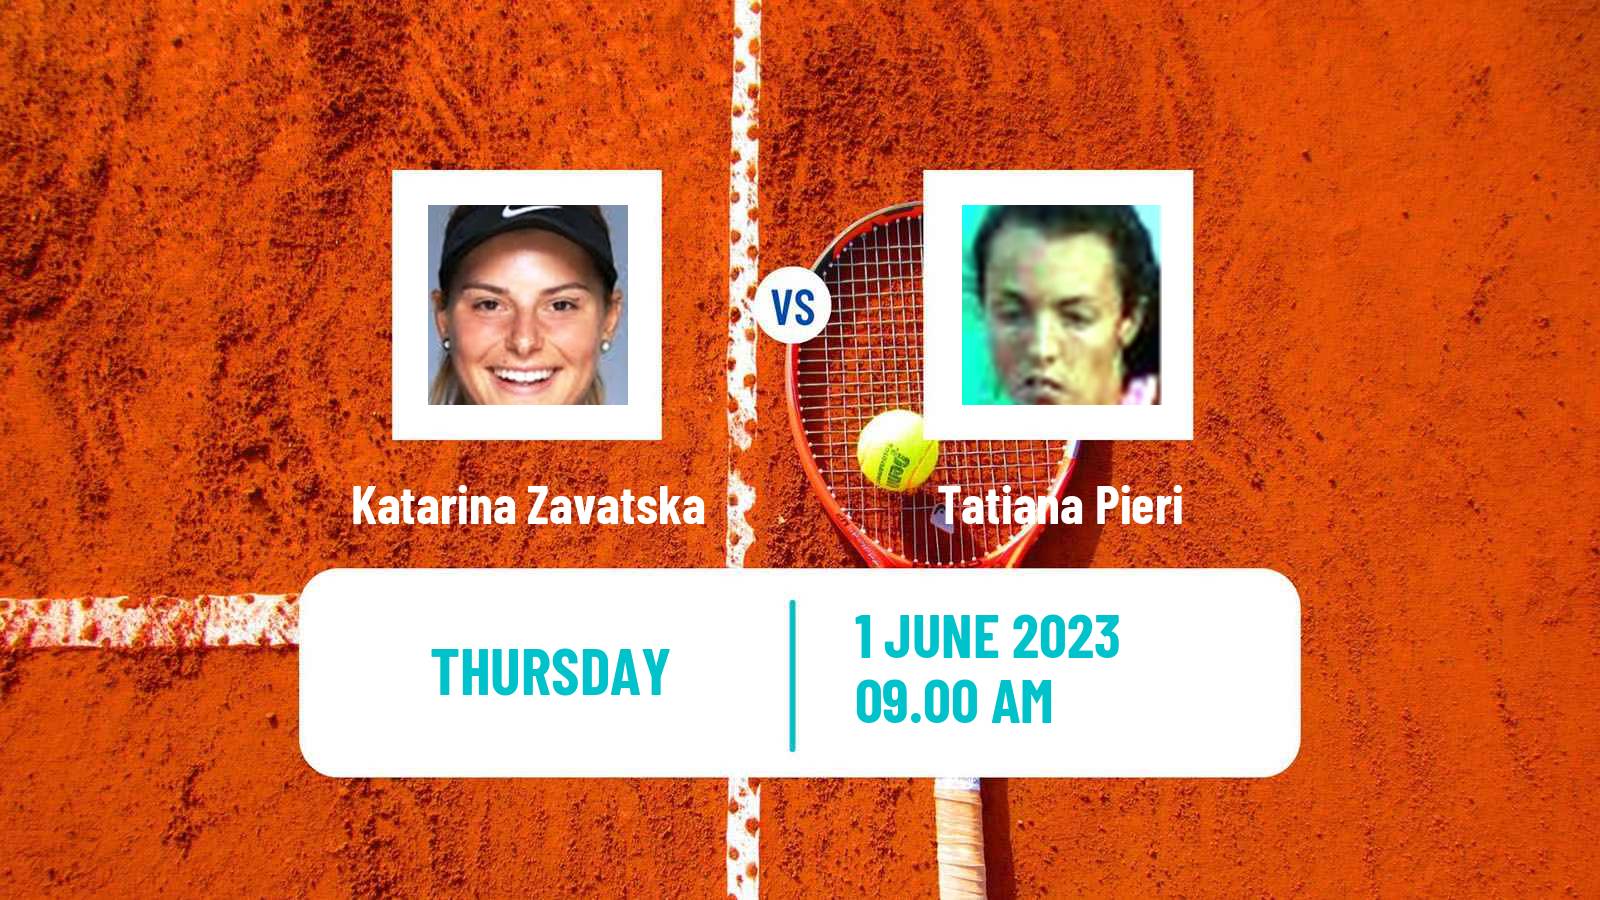 Tennis ITF W60 Brescia Women Katarina Zavatska - Tatiana Pieri